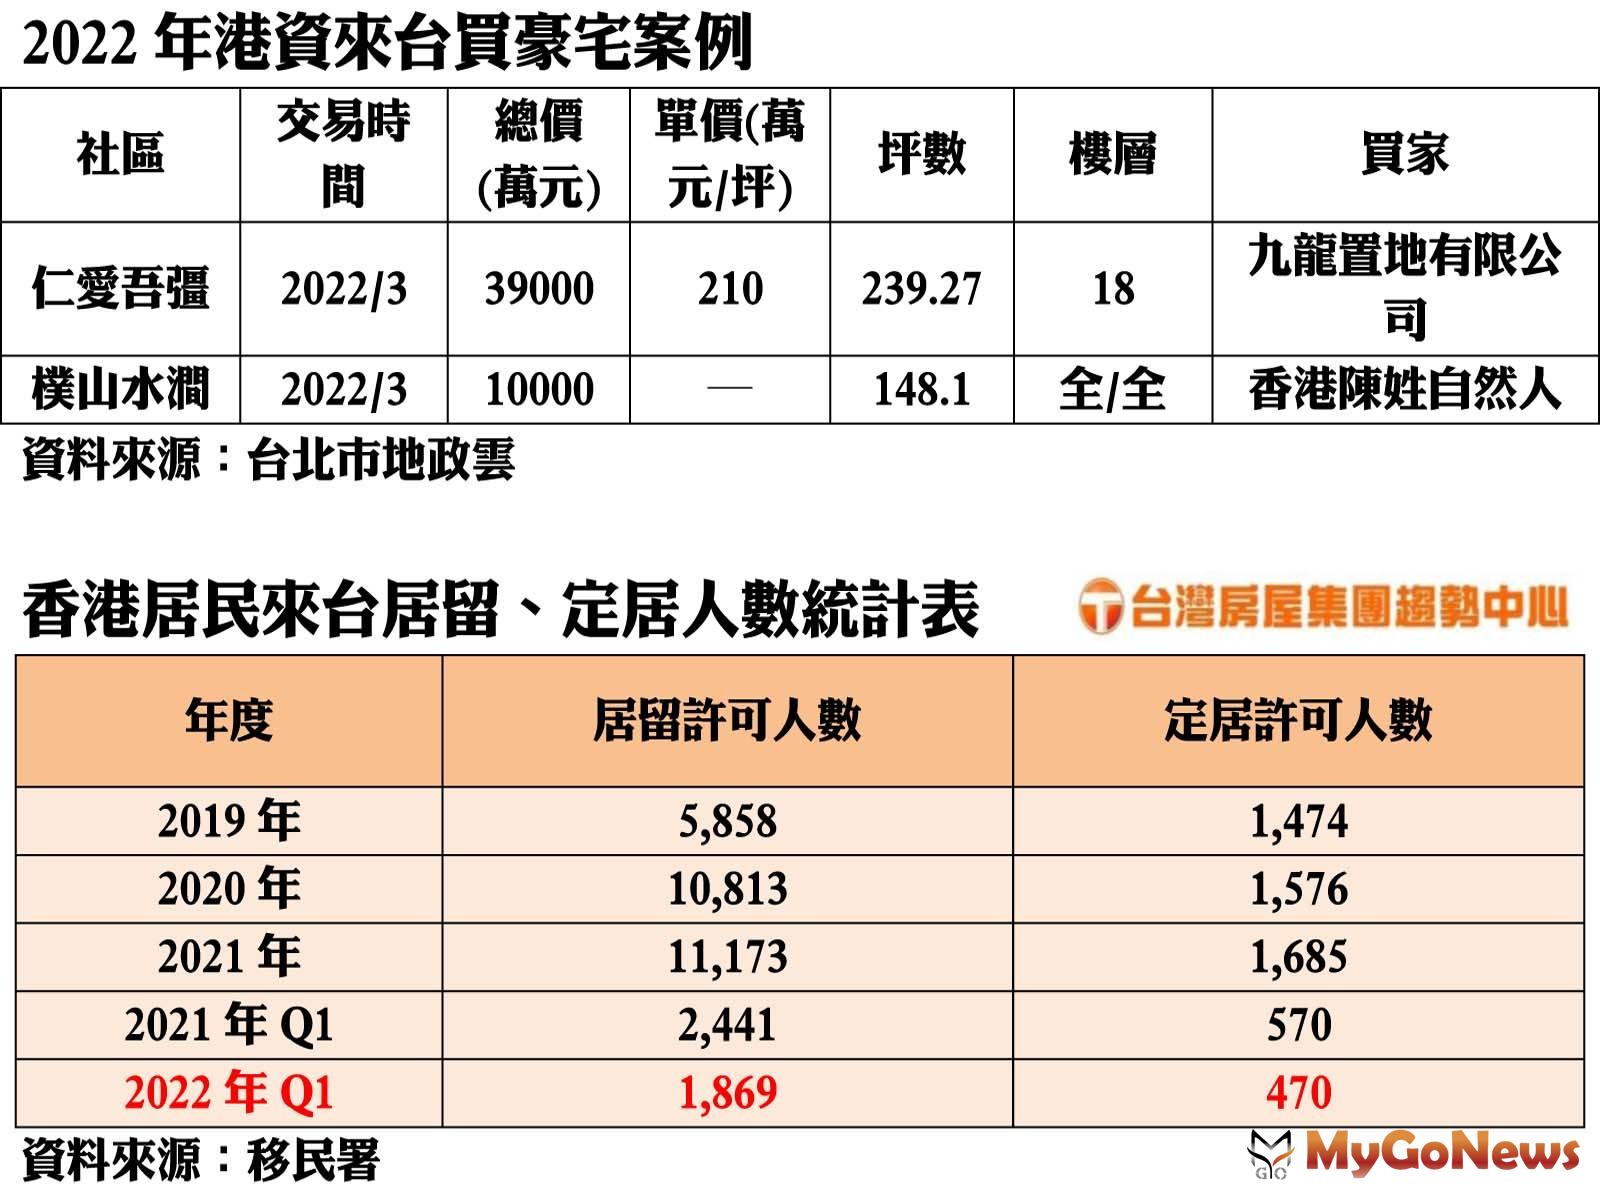 2022年港資來台買豪宅案例/香港居民來台居留、定居人數統計表 MyGoNews房地產新聞 市場快訊